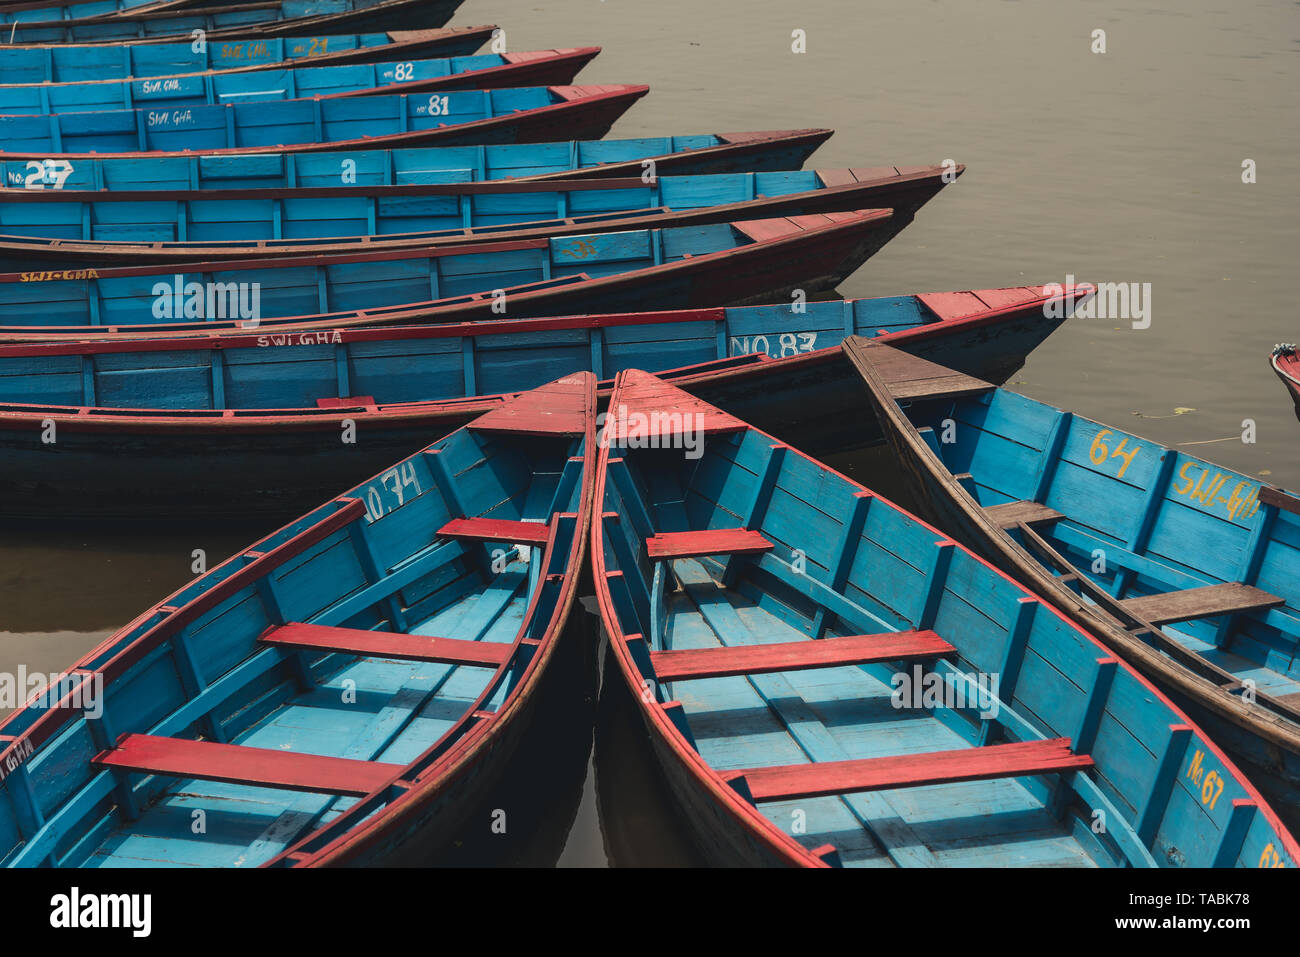 Hohen winkel Blick auf viele rote und blaue Zeile Boote an einem Dock. Stockfoto